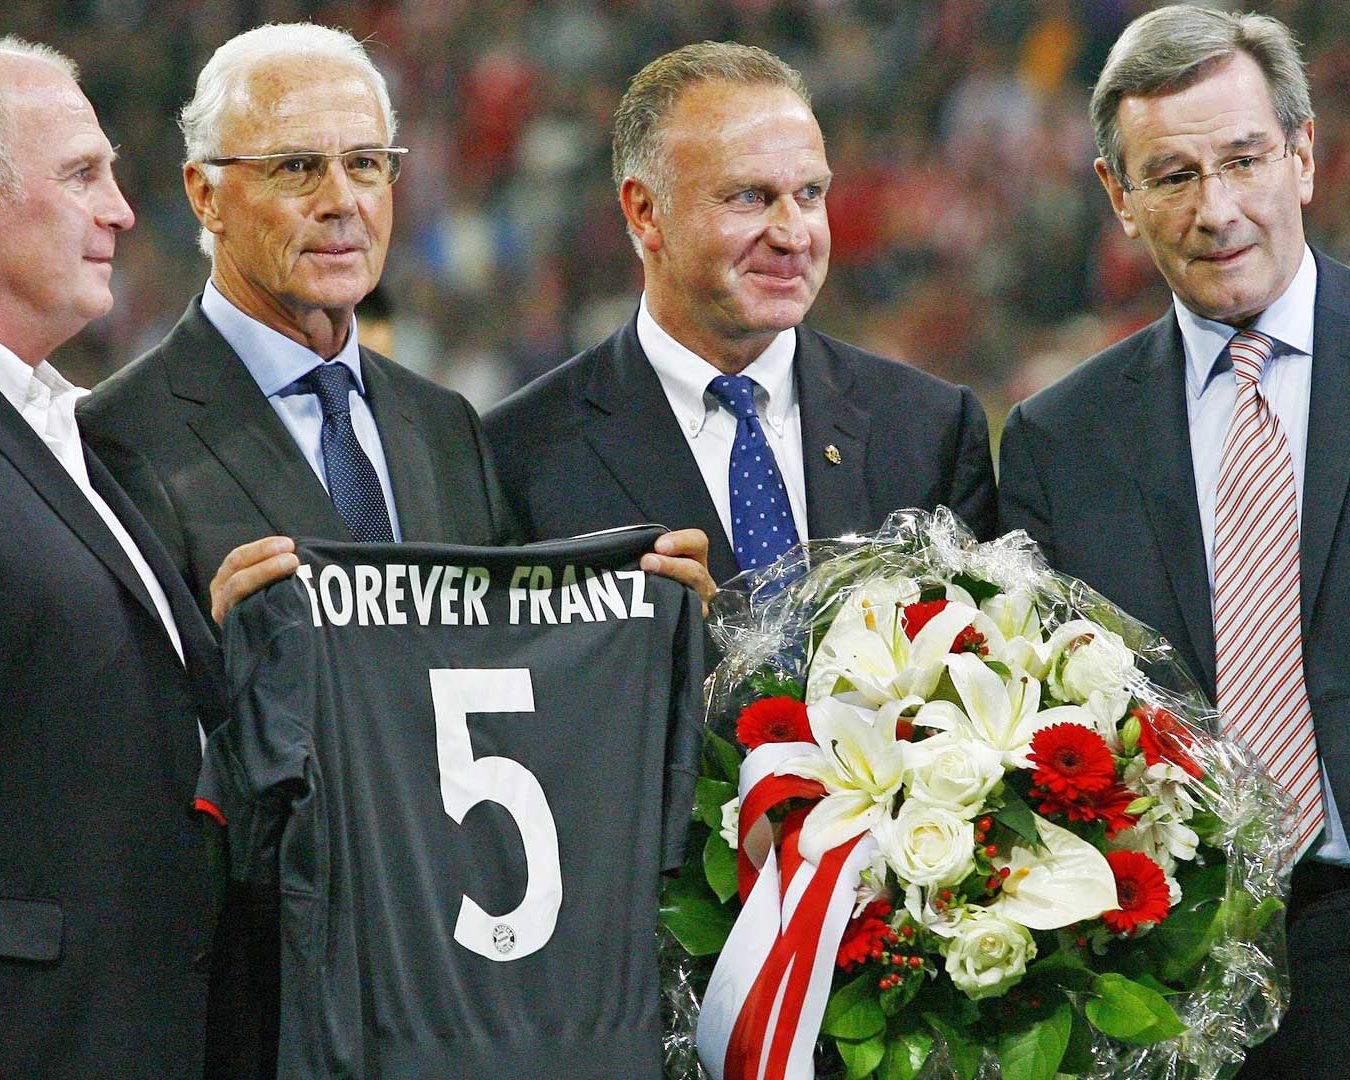 Huyền thoại Franz Beckenbauer qua đời ở tuổi 78